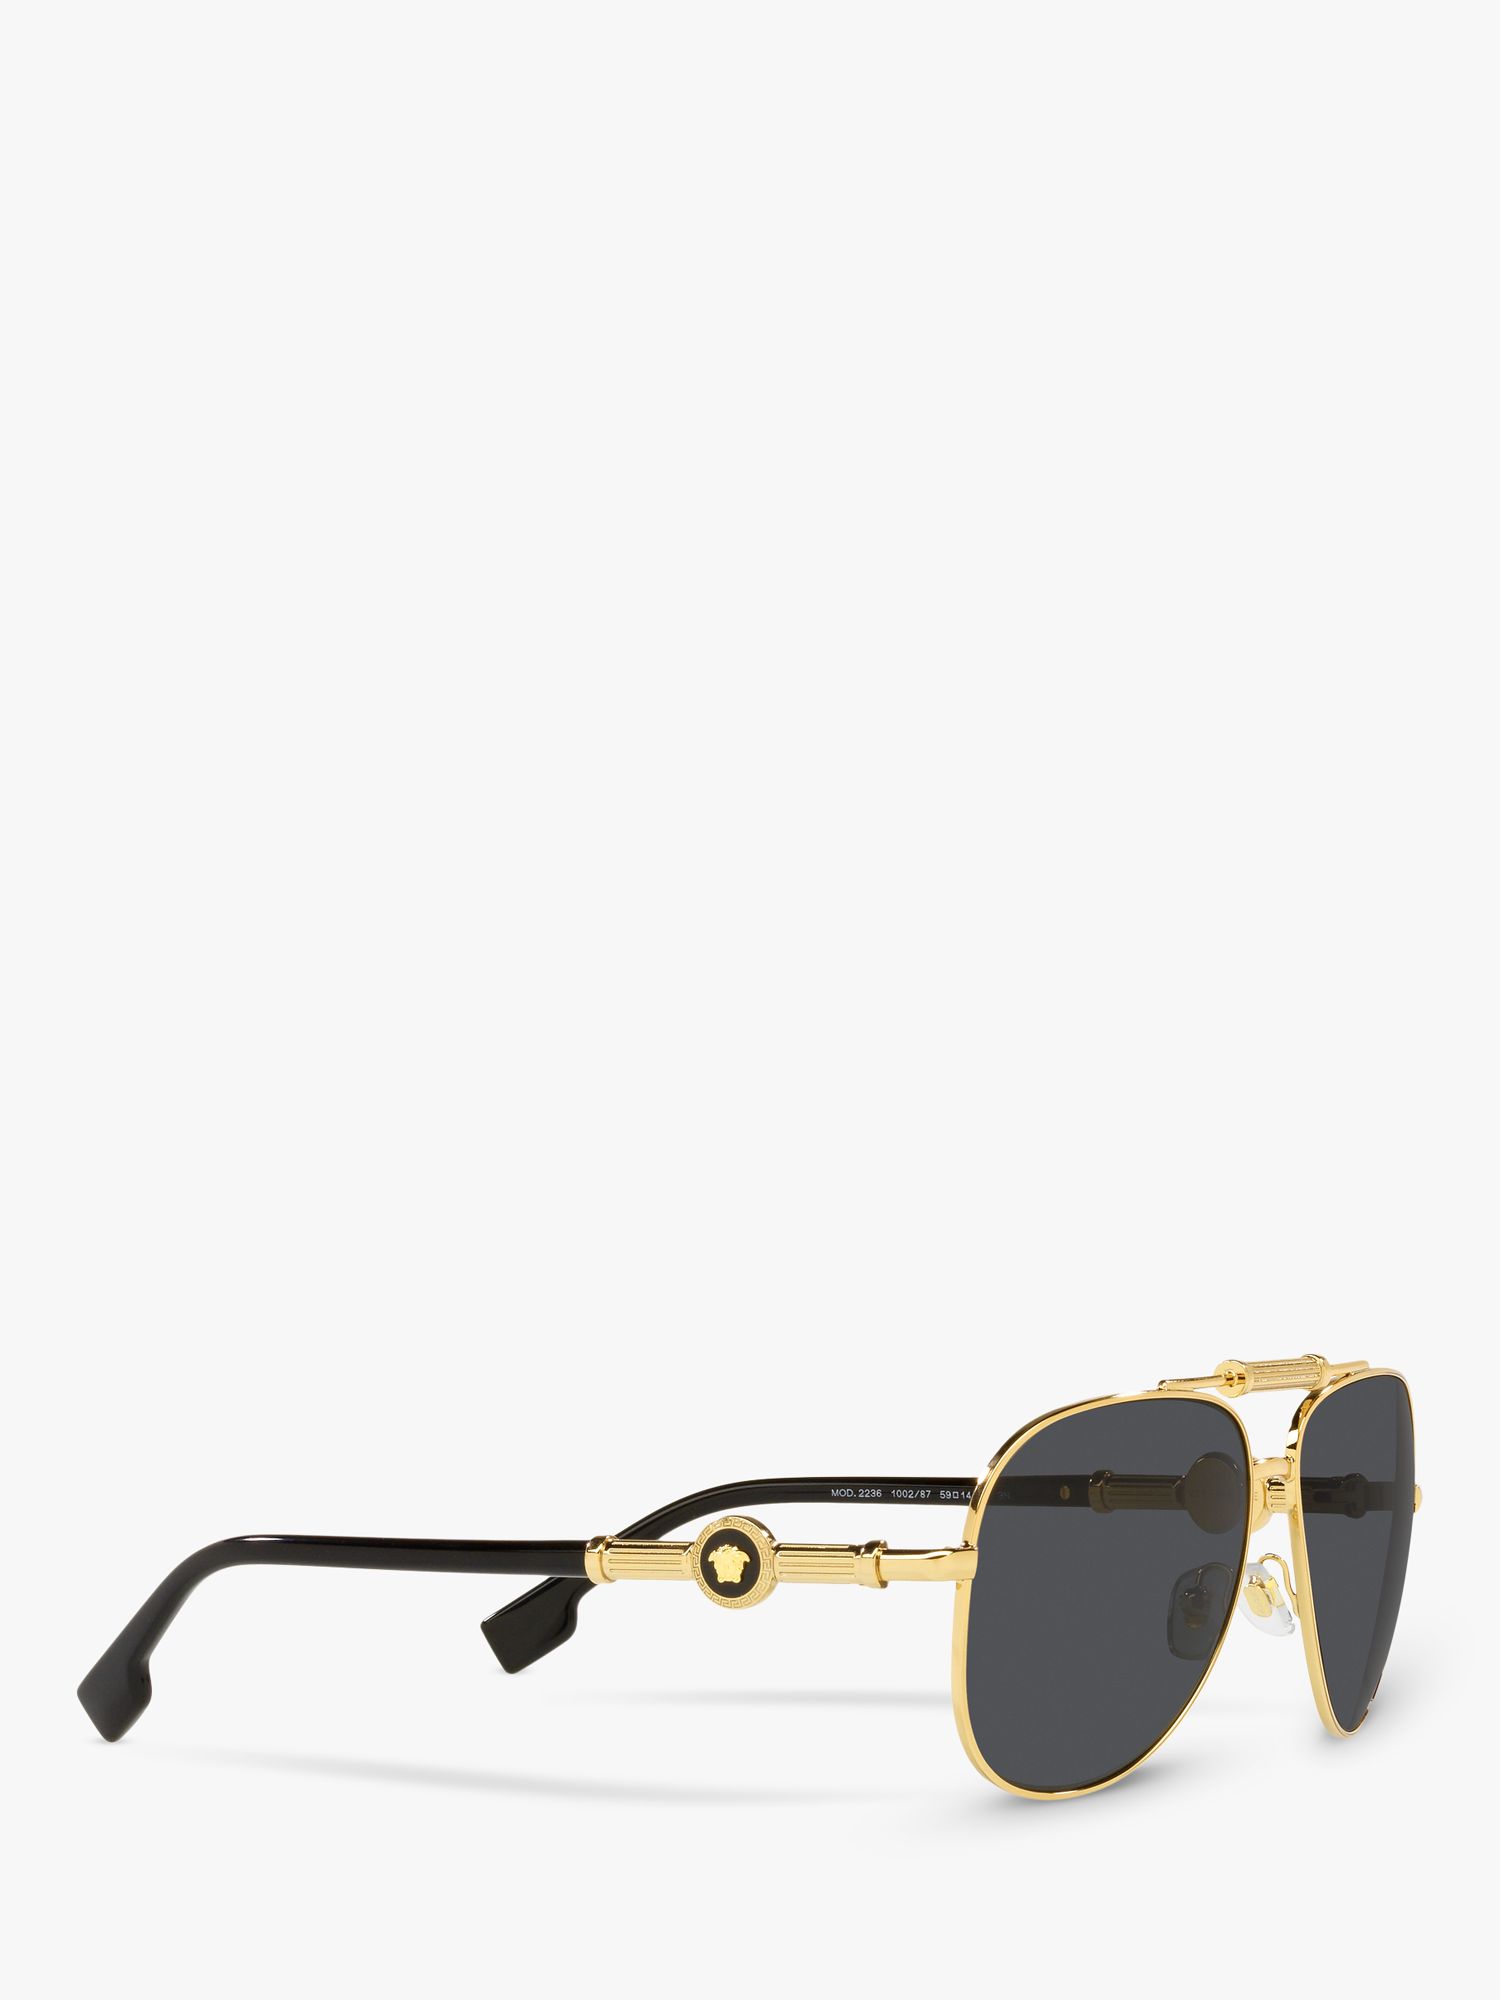 Versace VE2236 Unisex Pilot Sunglasses, Gold/Black